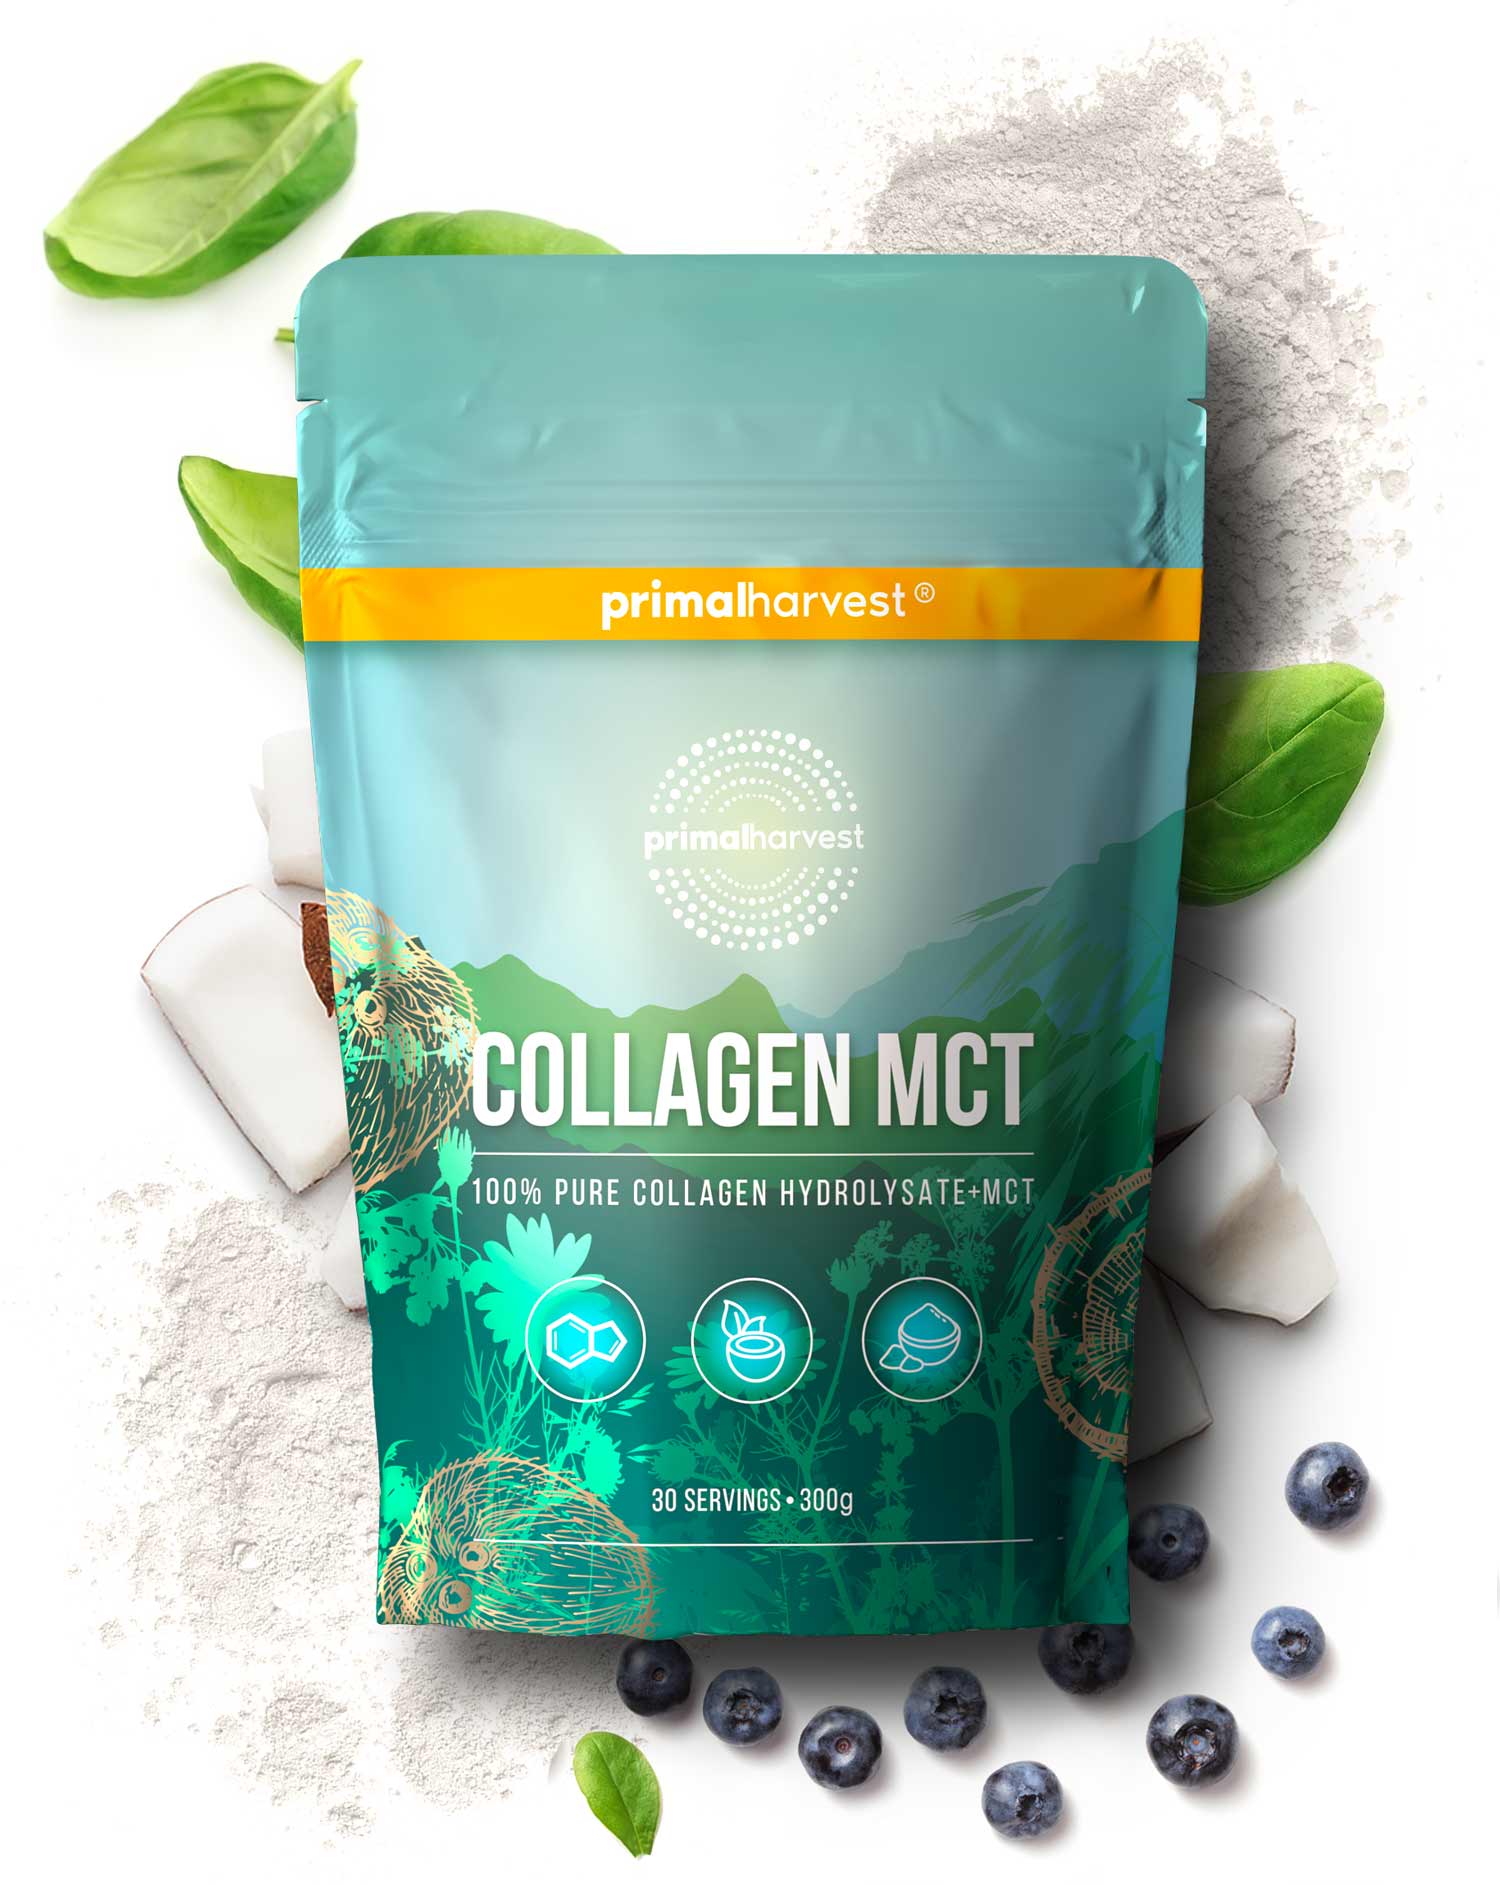 Collagen MCT